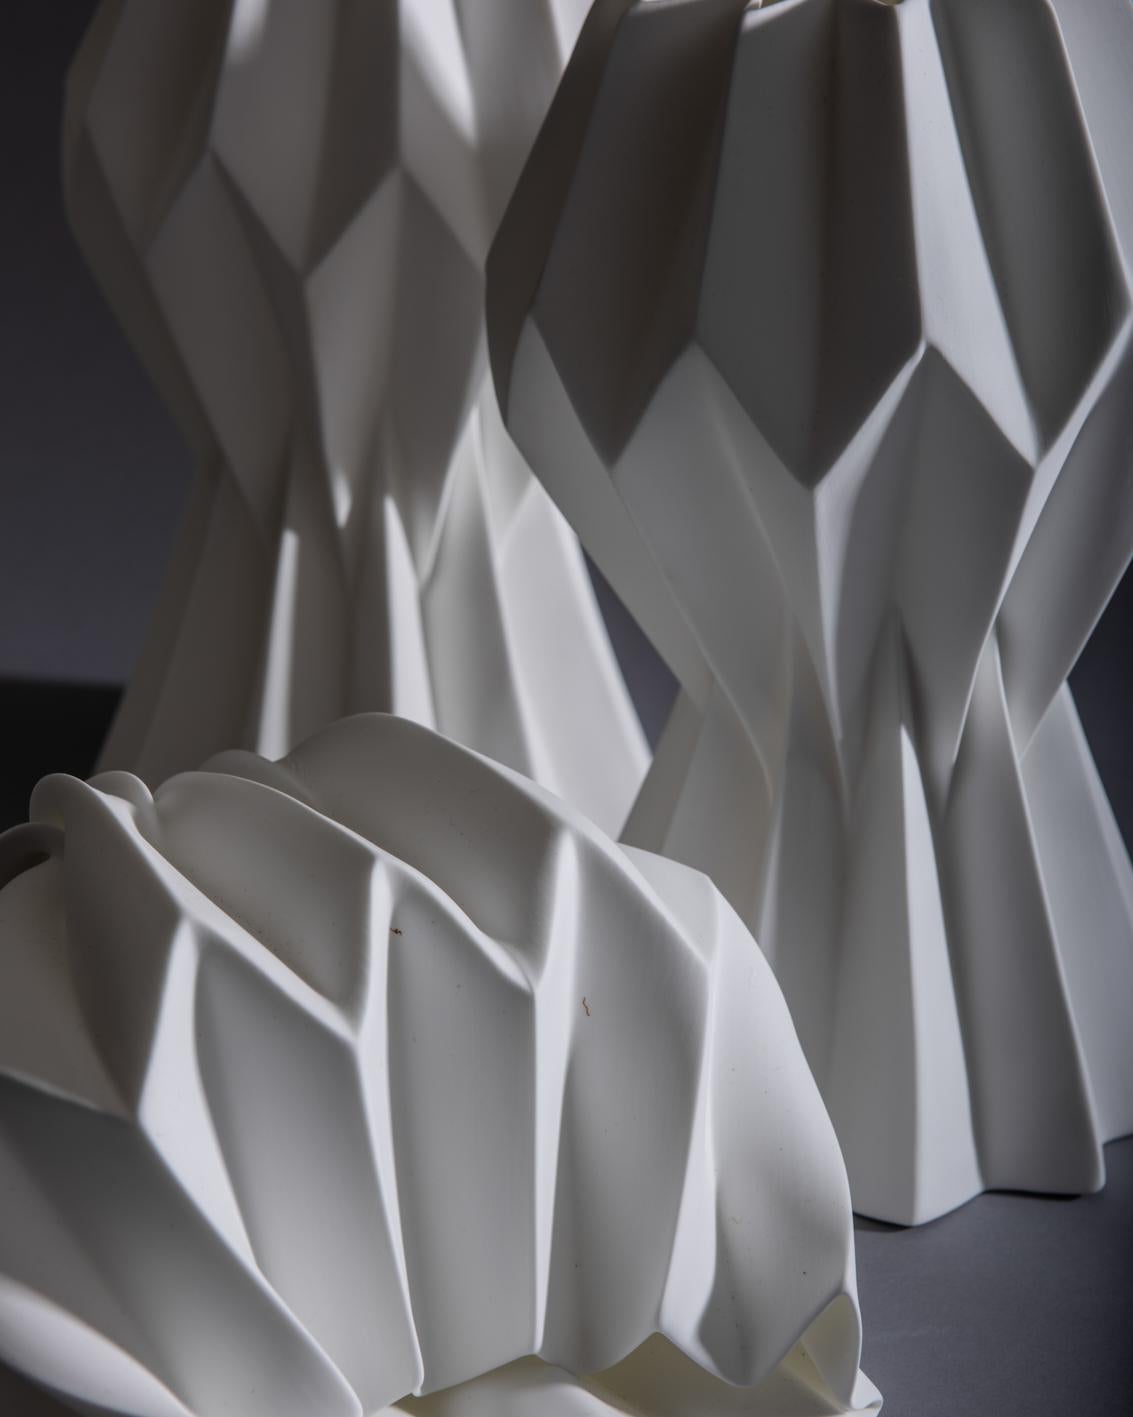 “Slump” Contemporary Origami Ceramic Vase by Studio Morison, No Slump Variation 4